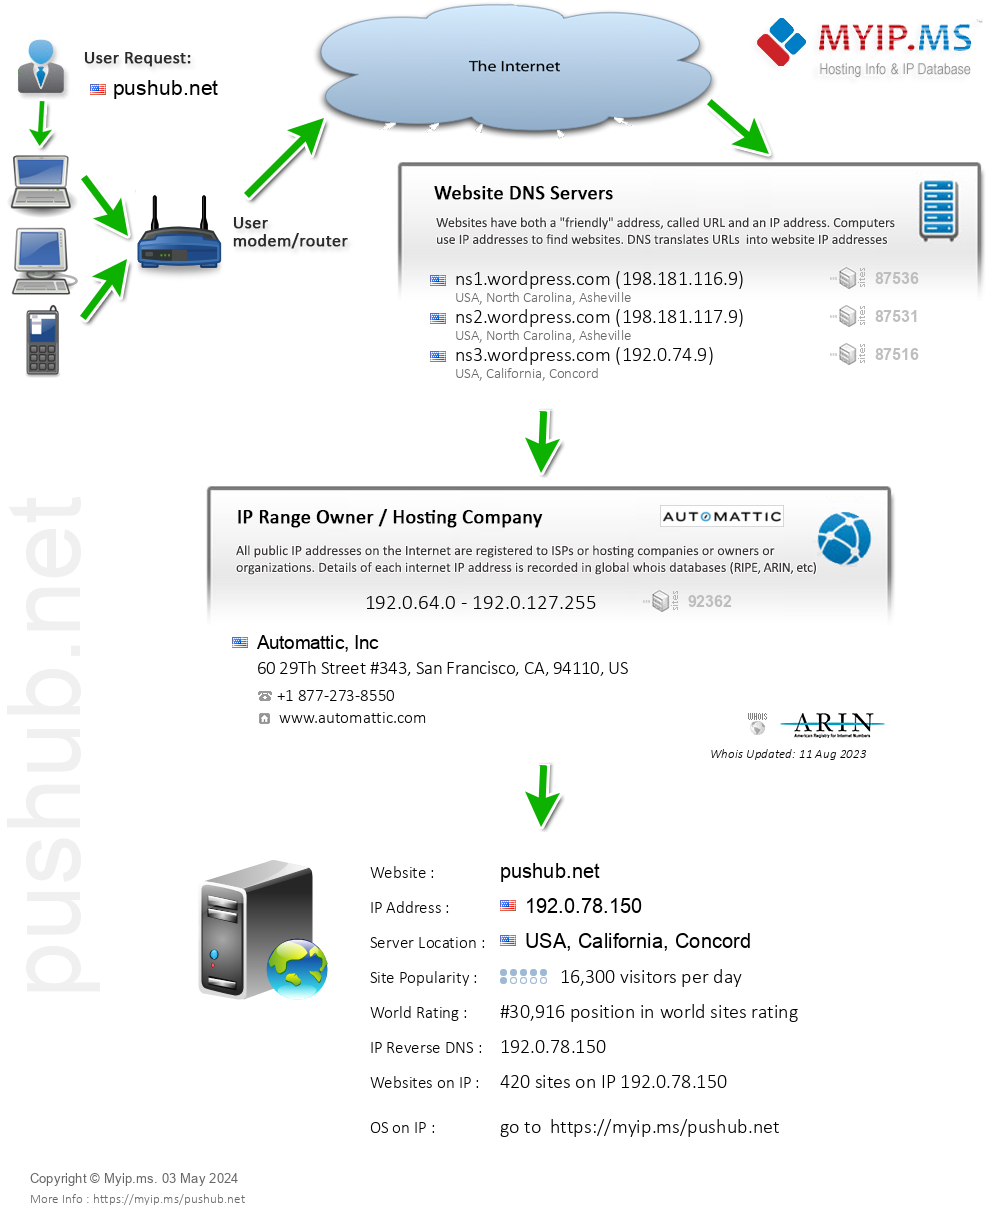 Pushub.net - Website Hosting Visual IP Diagram